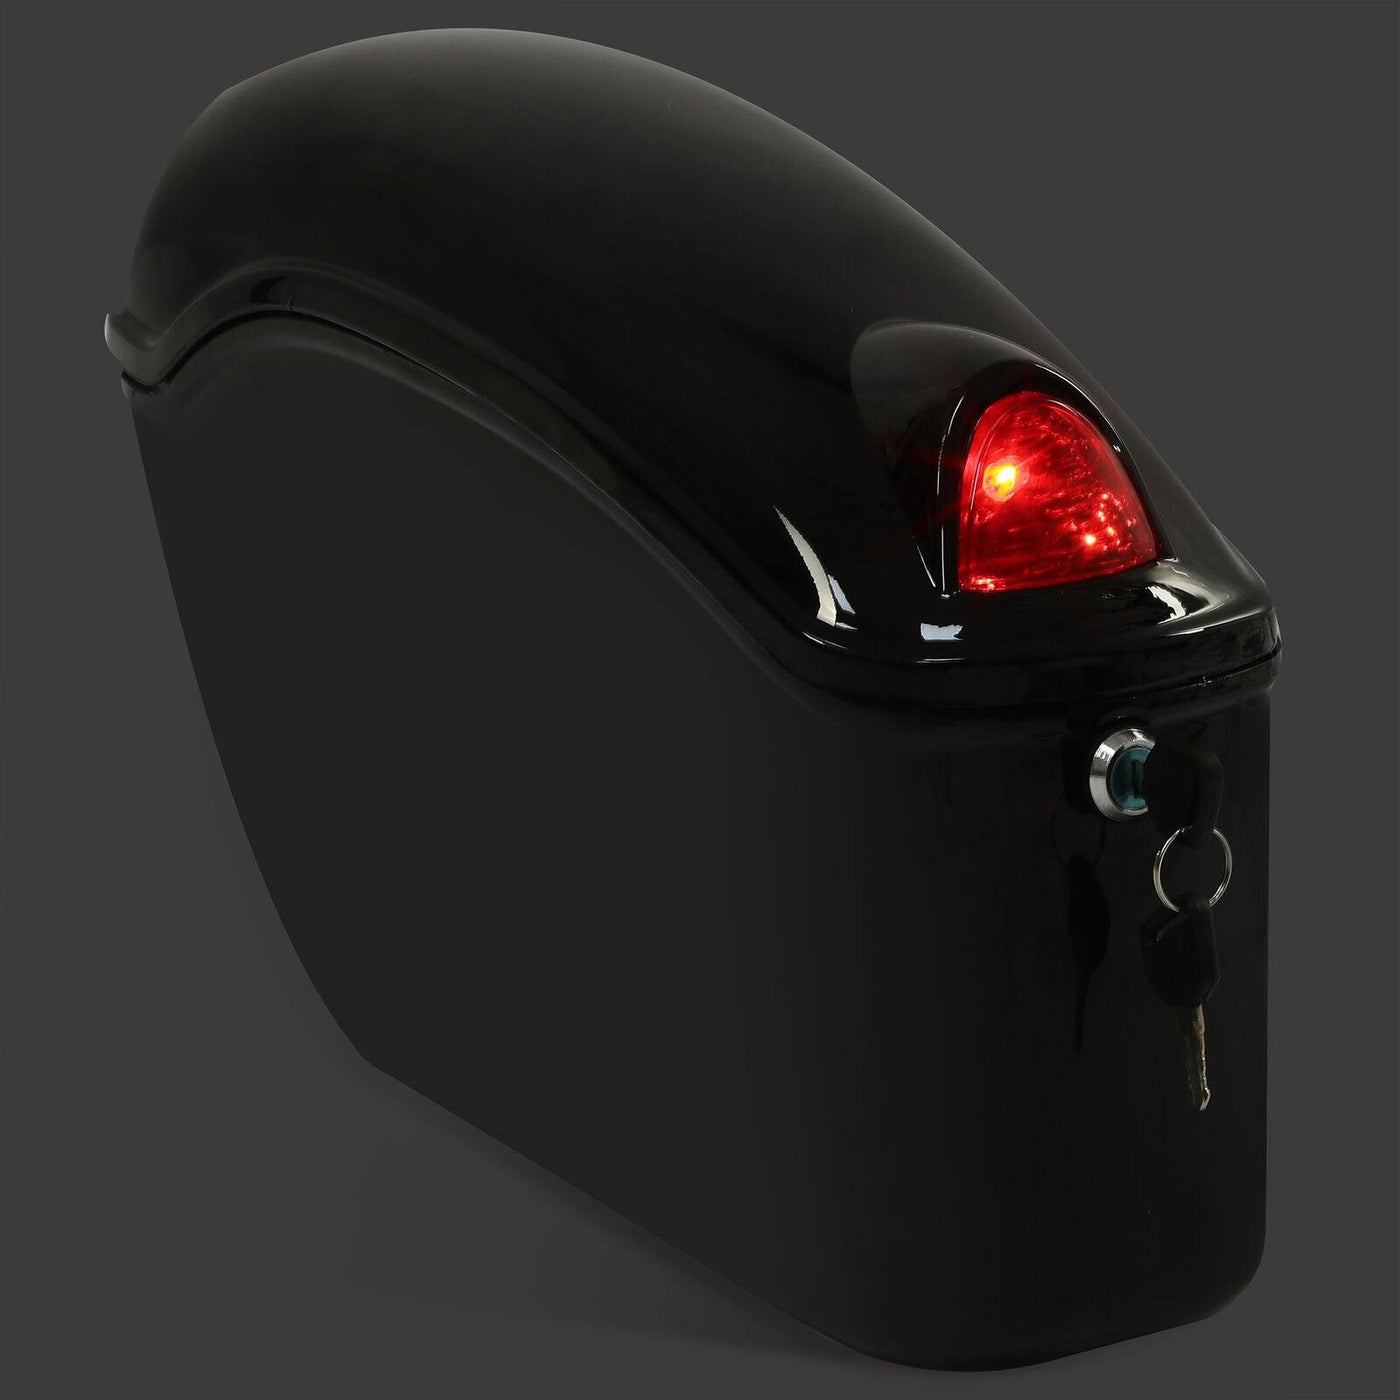 Black Hard Saddle Bags Trunk Luggage w/ Lights Mount Bracket Motorcycle Cruiser - Moto Life Products